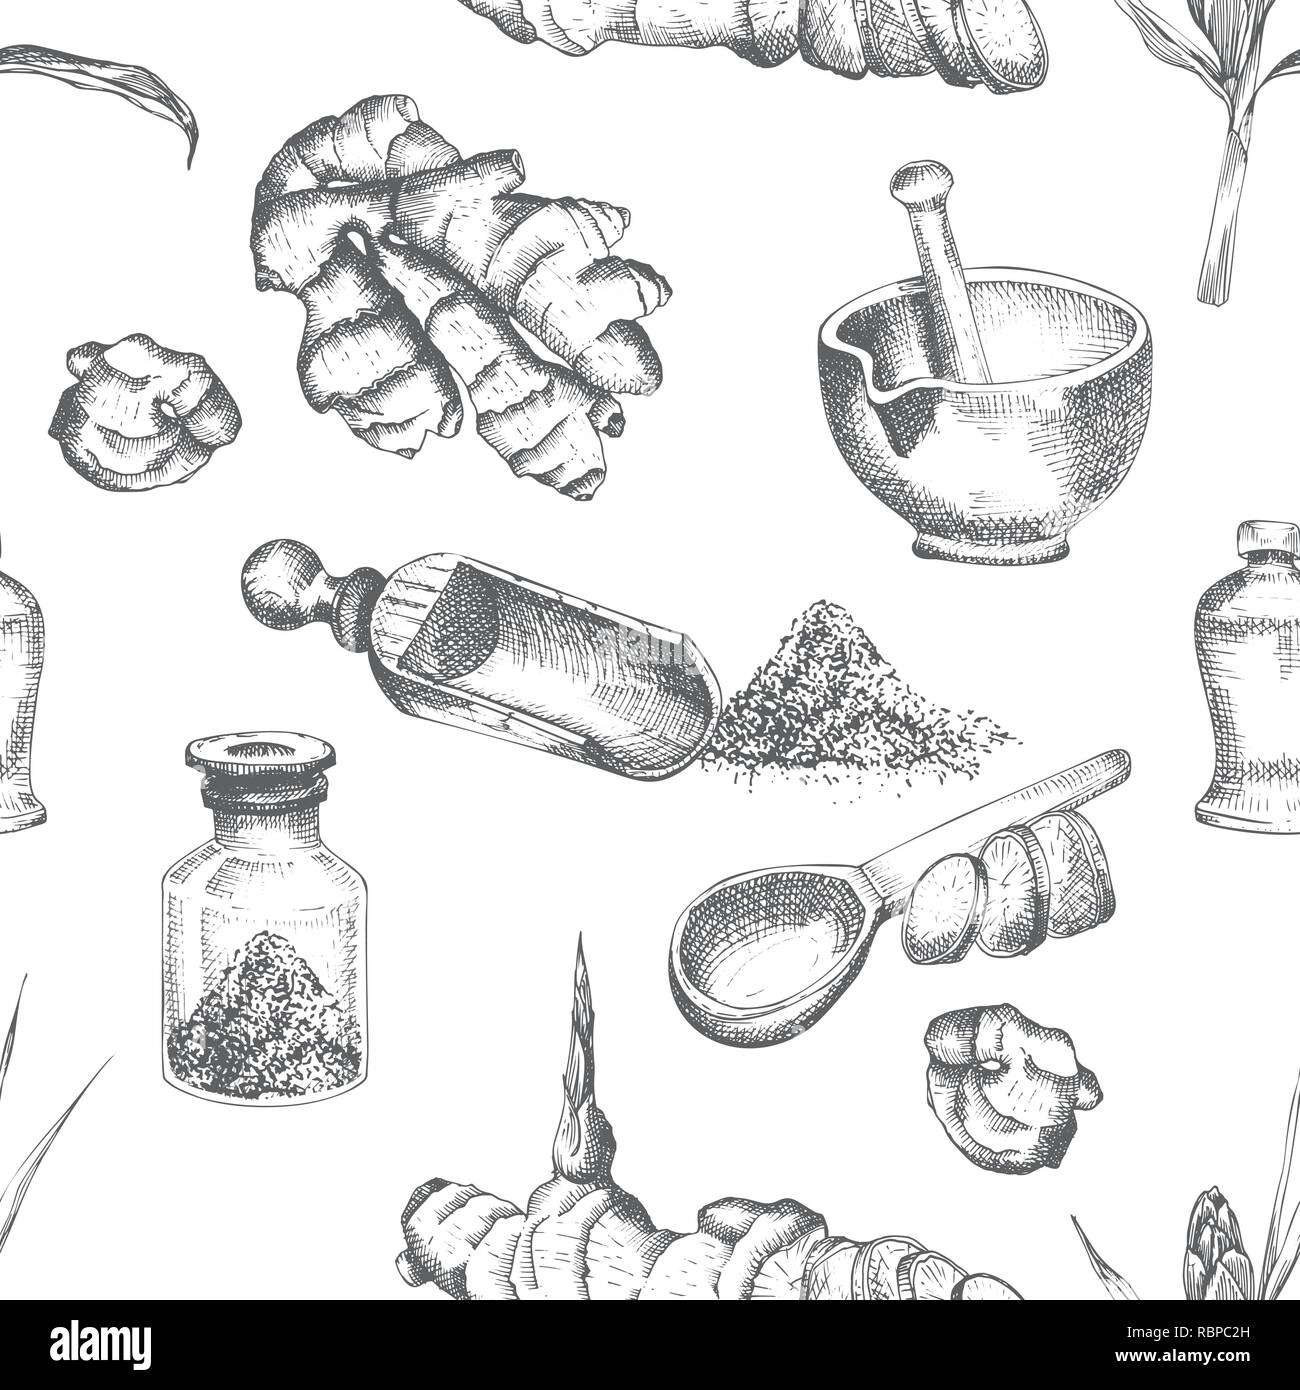 Nahtlose Muster Hand gezeichnet von Ingwer Wurzeln, lebt und Blumen in schwarzer Farbe auf weißem Hintergrund. Retro Vintage grafik design Botanische Zeichnung, Gravur Stil Stock Vektor